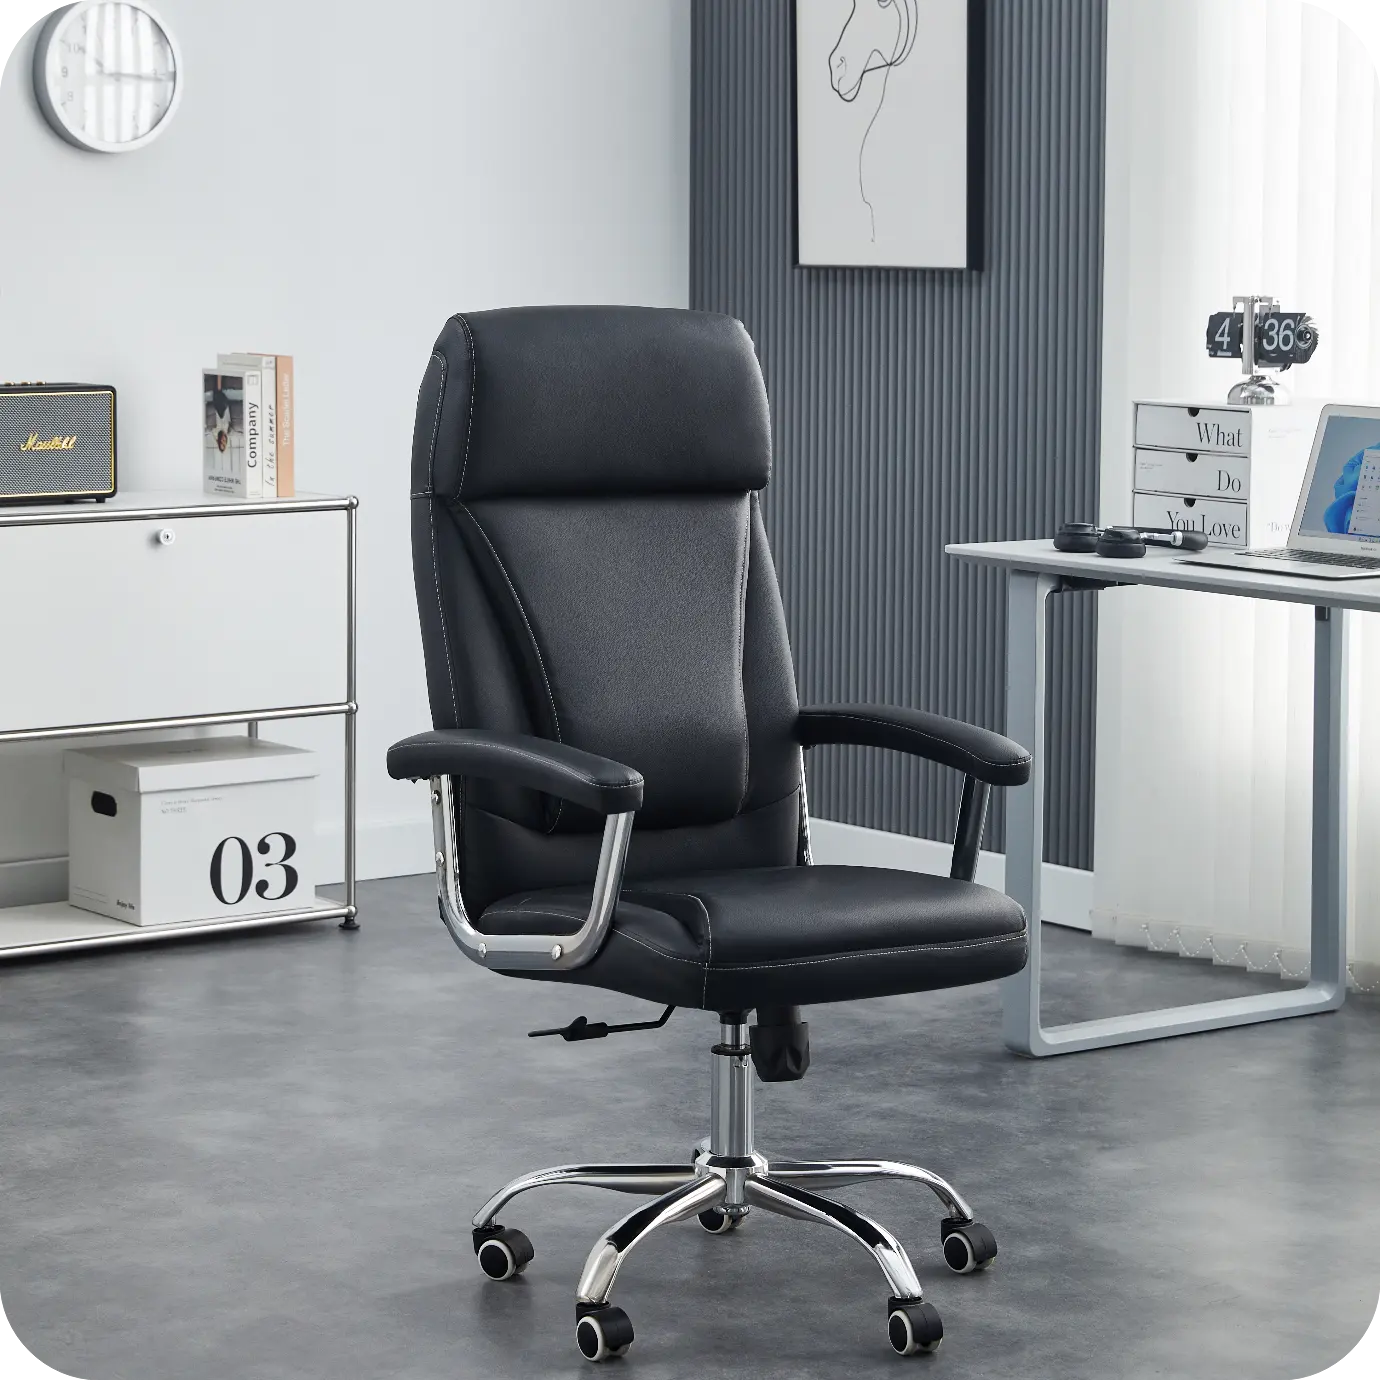 Новый дизайн кожаный Искусственный кожаный удобный вращающийся регулируемый по высоте офисный стул для руководителя